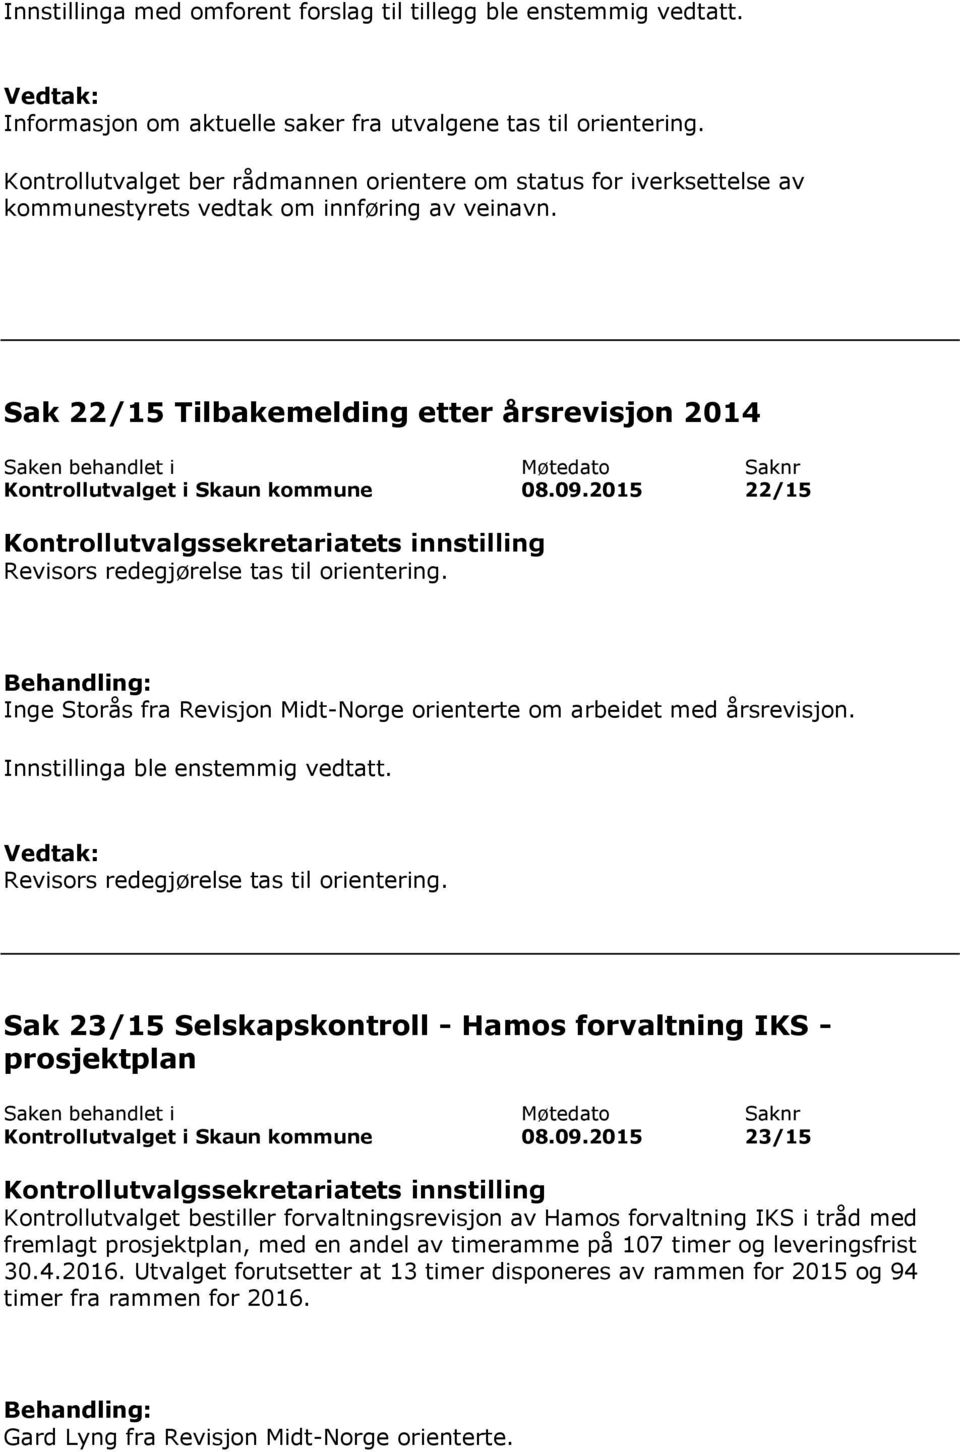 Sak 22/15 Tilbakemelding etter årsrevisjon 2014 Kontrollutvalget i Skaun kommune 08.09.2015 22/15 Revisors redegjørelse tas til orientering.